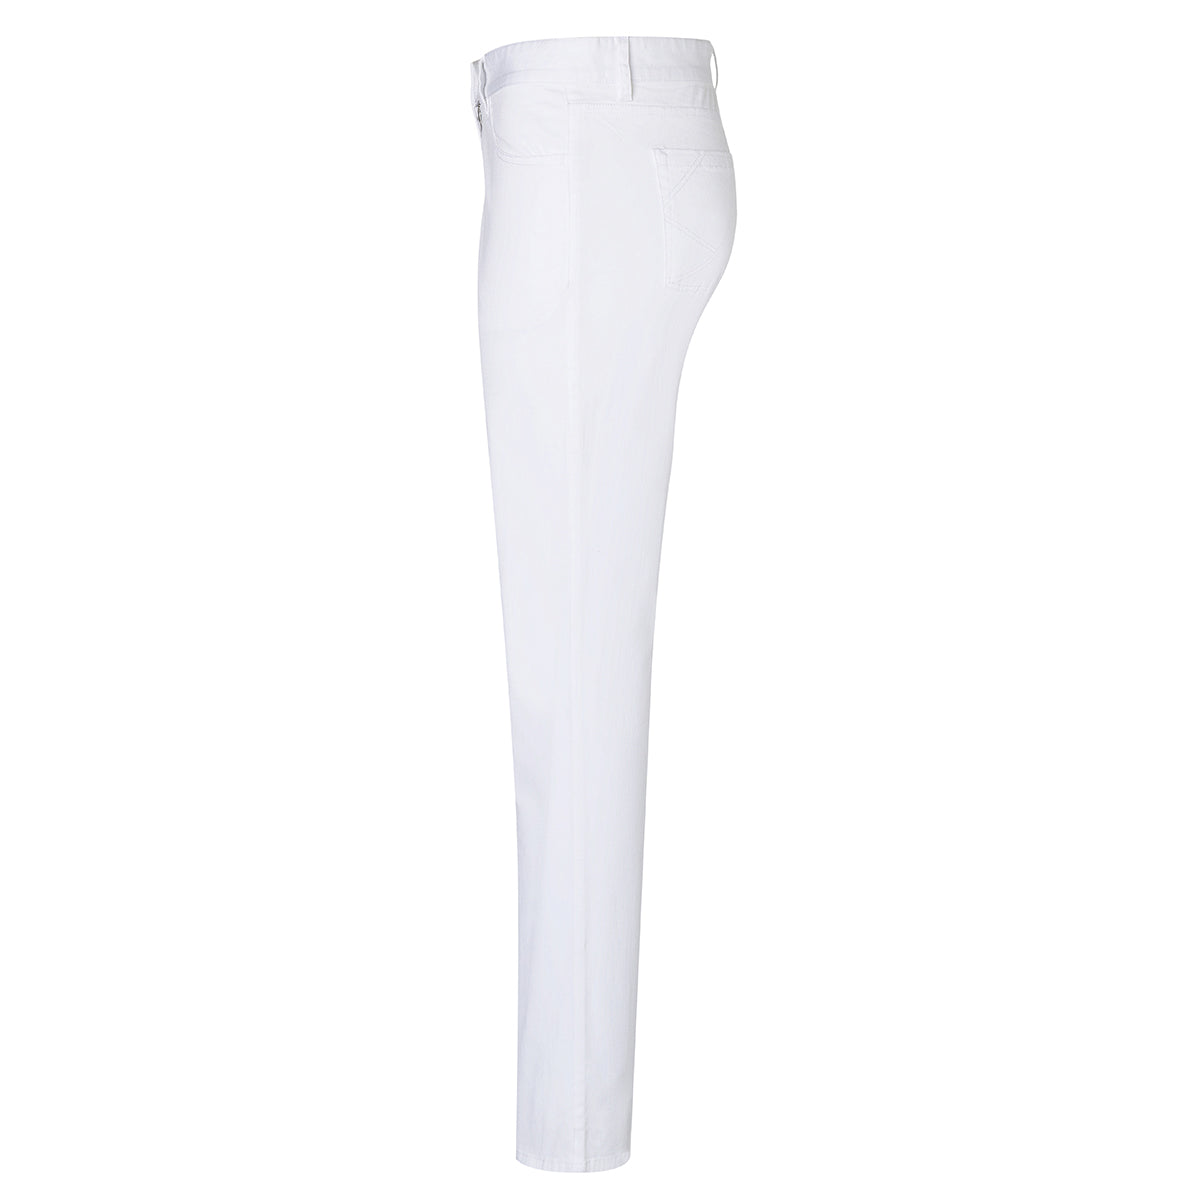 Karlowsky - 5-lomme bukser til damer - Hvid - Størrelse: 54